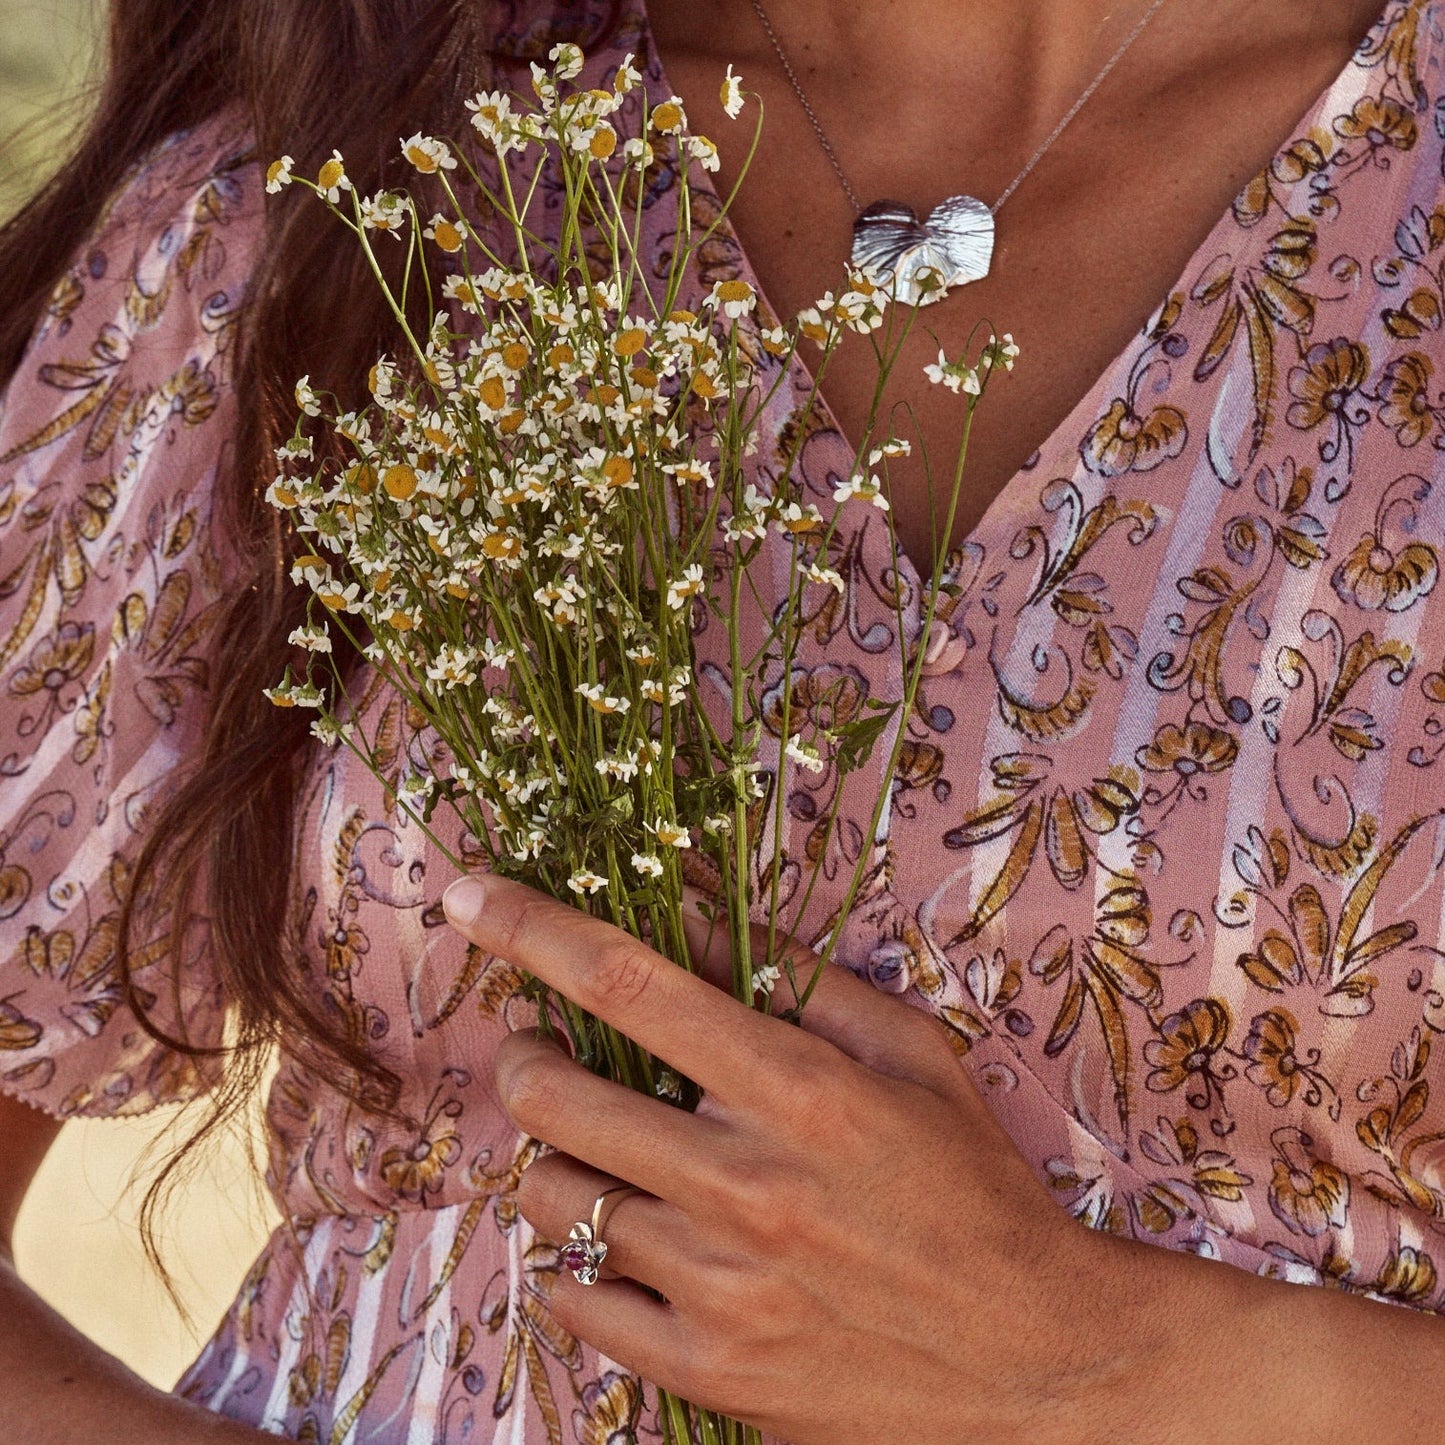 Mujer sujetando un ramo de flores y mostrando el Anillo Isabela, anillo con forma de flor y aro recto, que lleva una pequeña bolita de rubí natural. Elaborado en plata de ley.